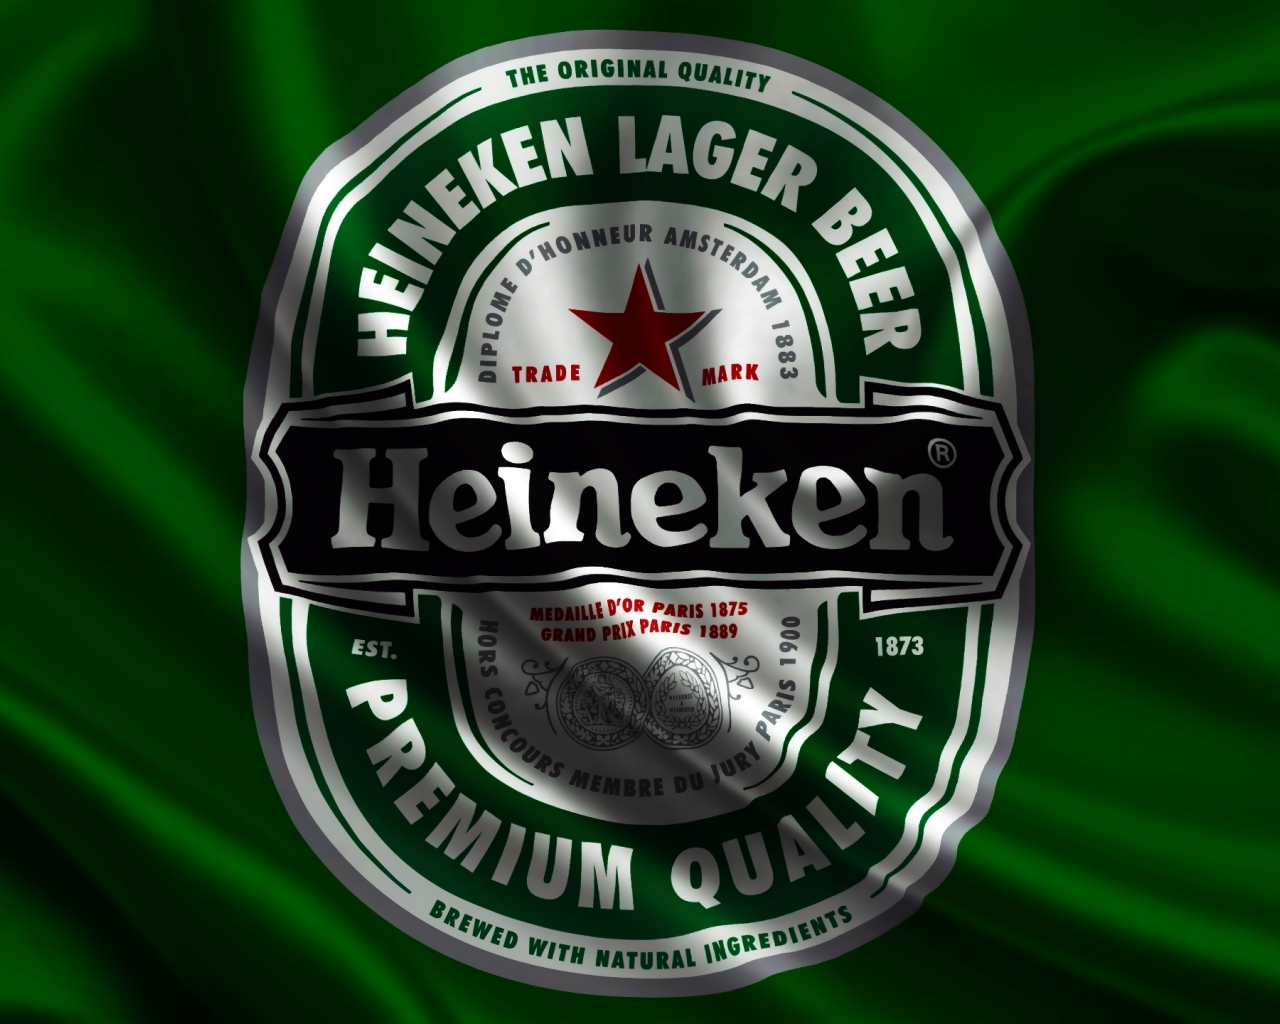 logo, green, drink, flag, beer, heineken